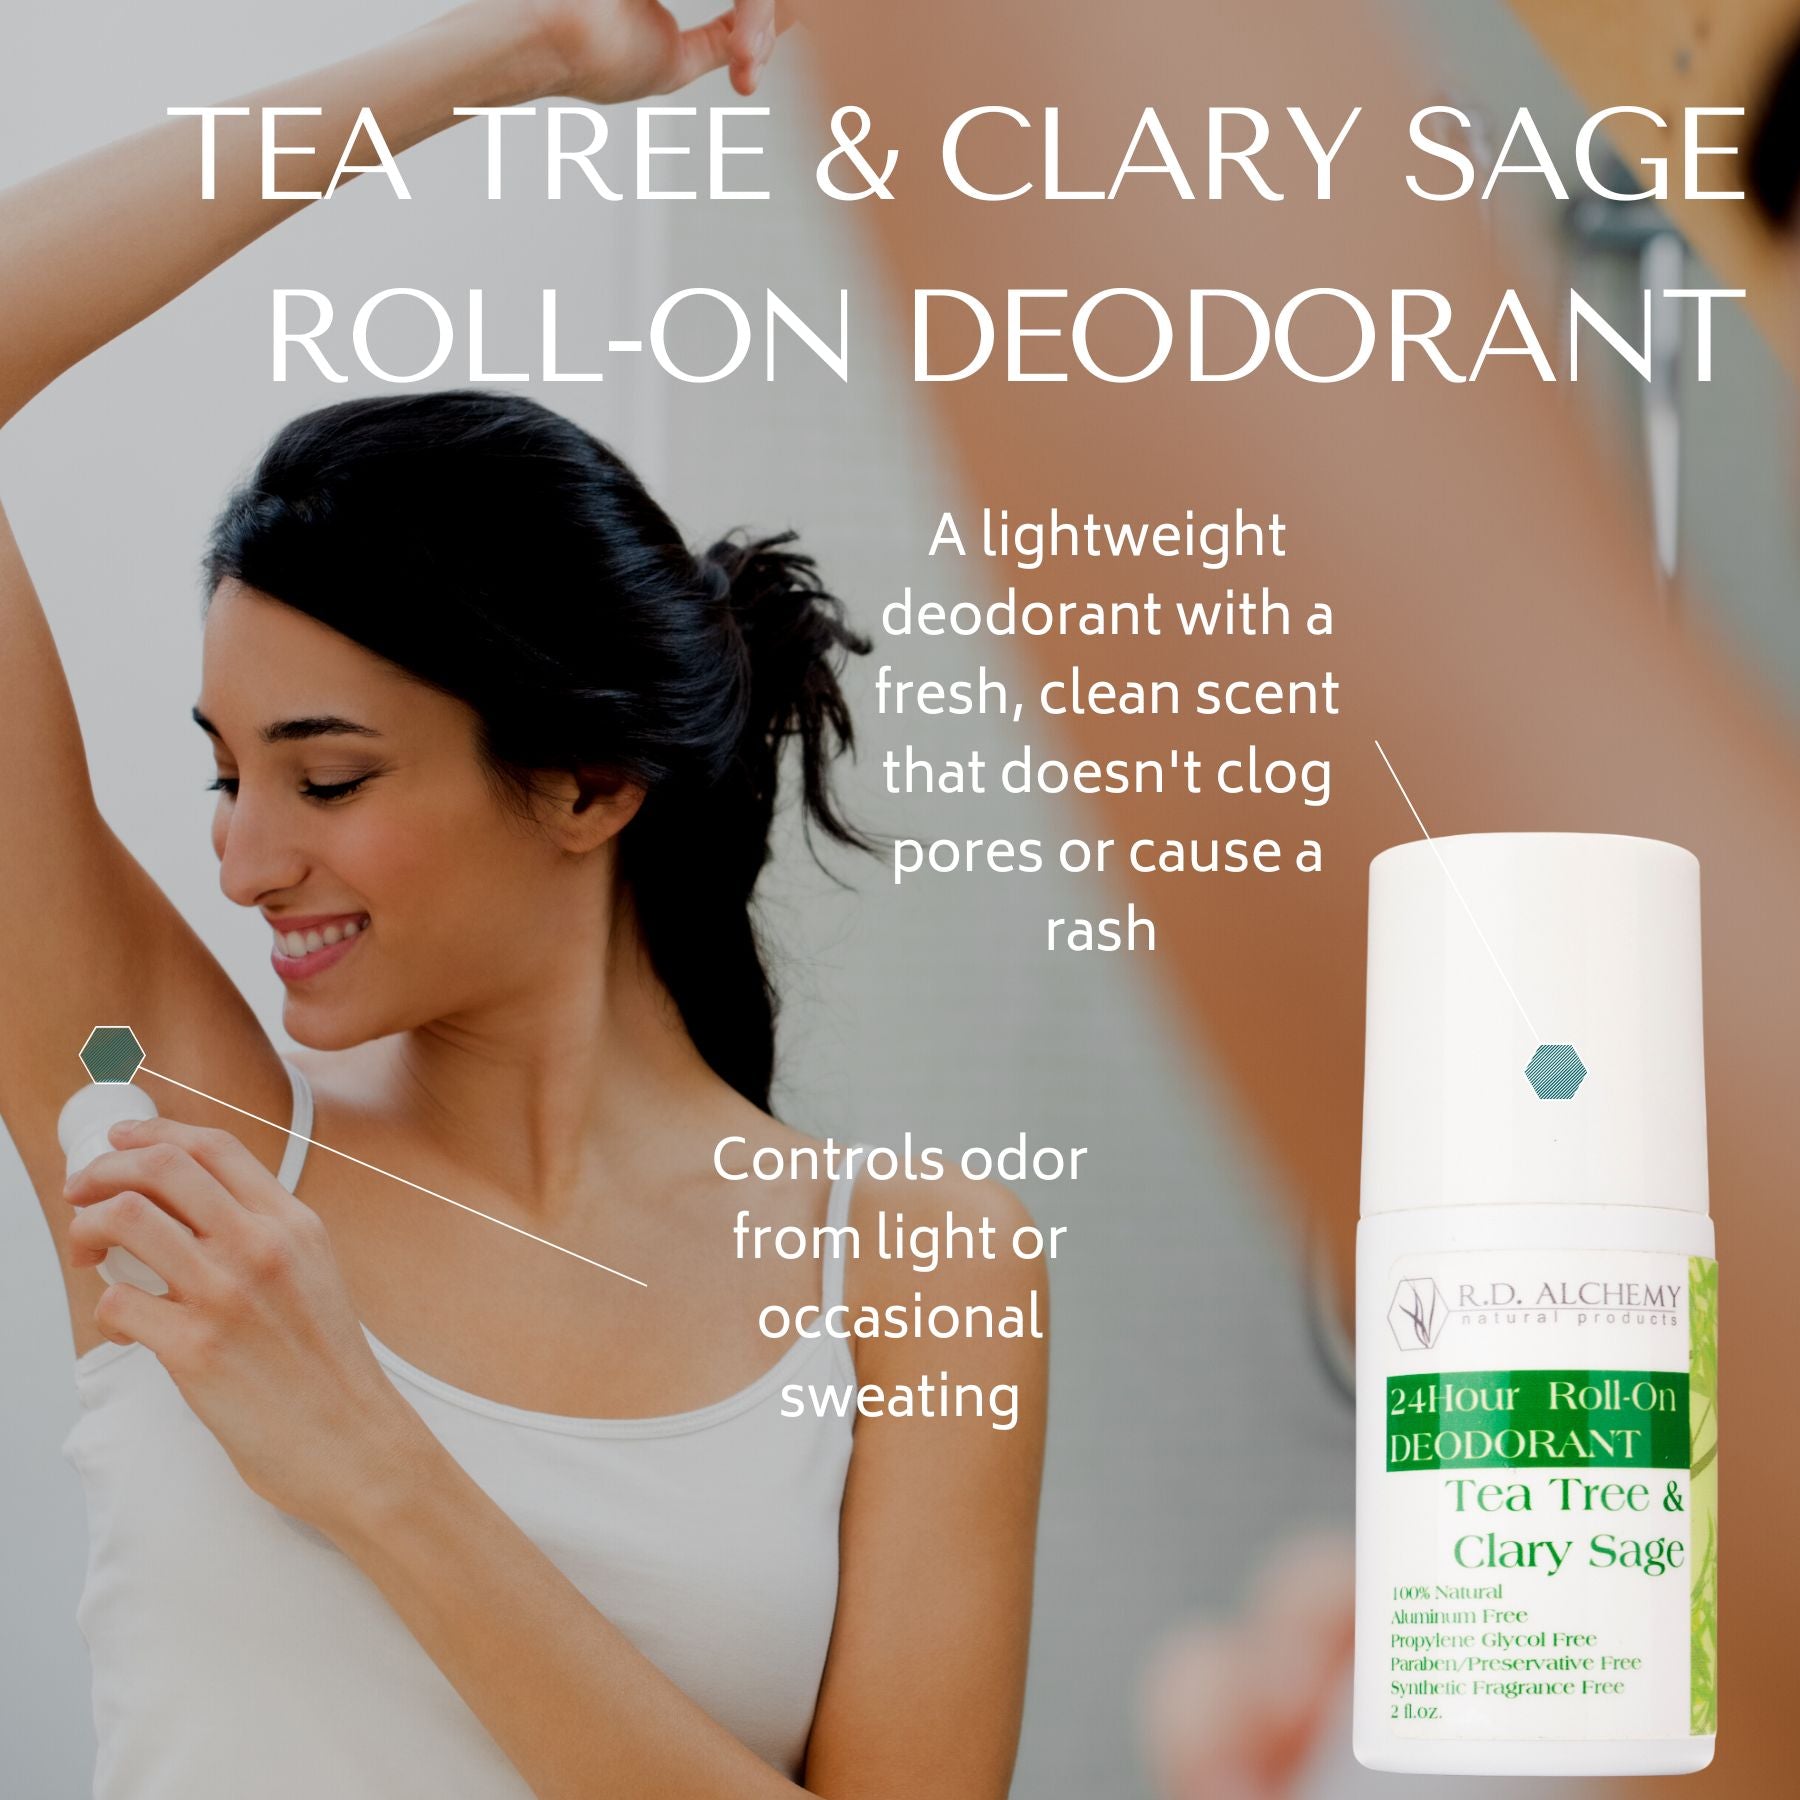 Tea tree & clary sage deodorant